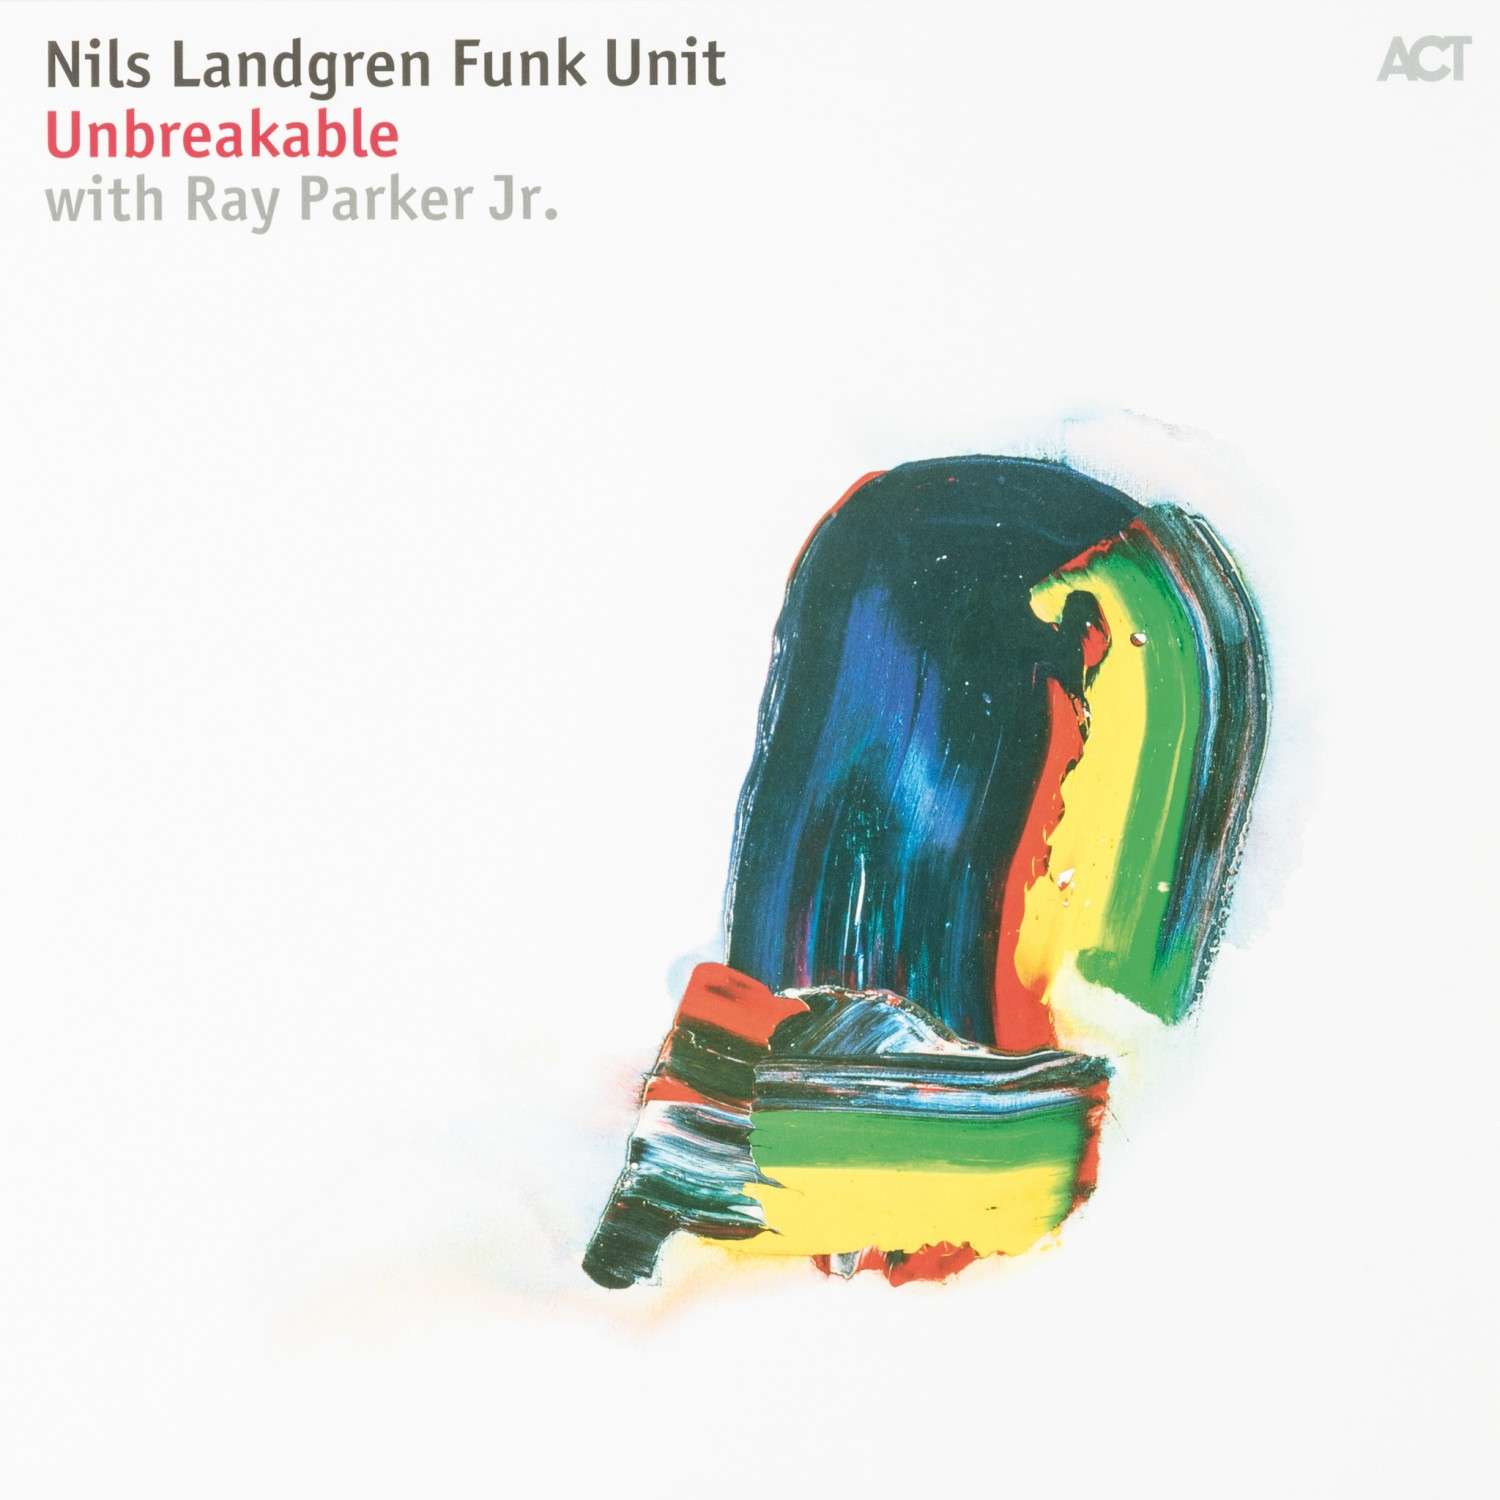 Schallplatte Nils Landgren Funk Unit, Ray Parker Jr - Unbreakable (ACT Music) im Test, Bild 2